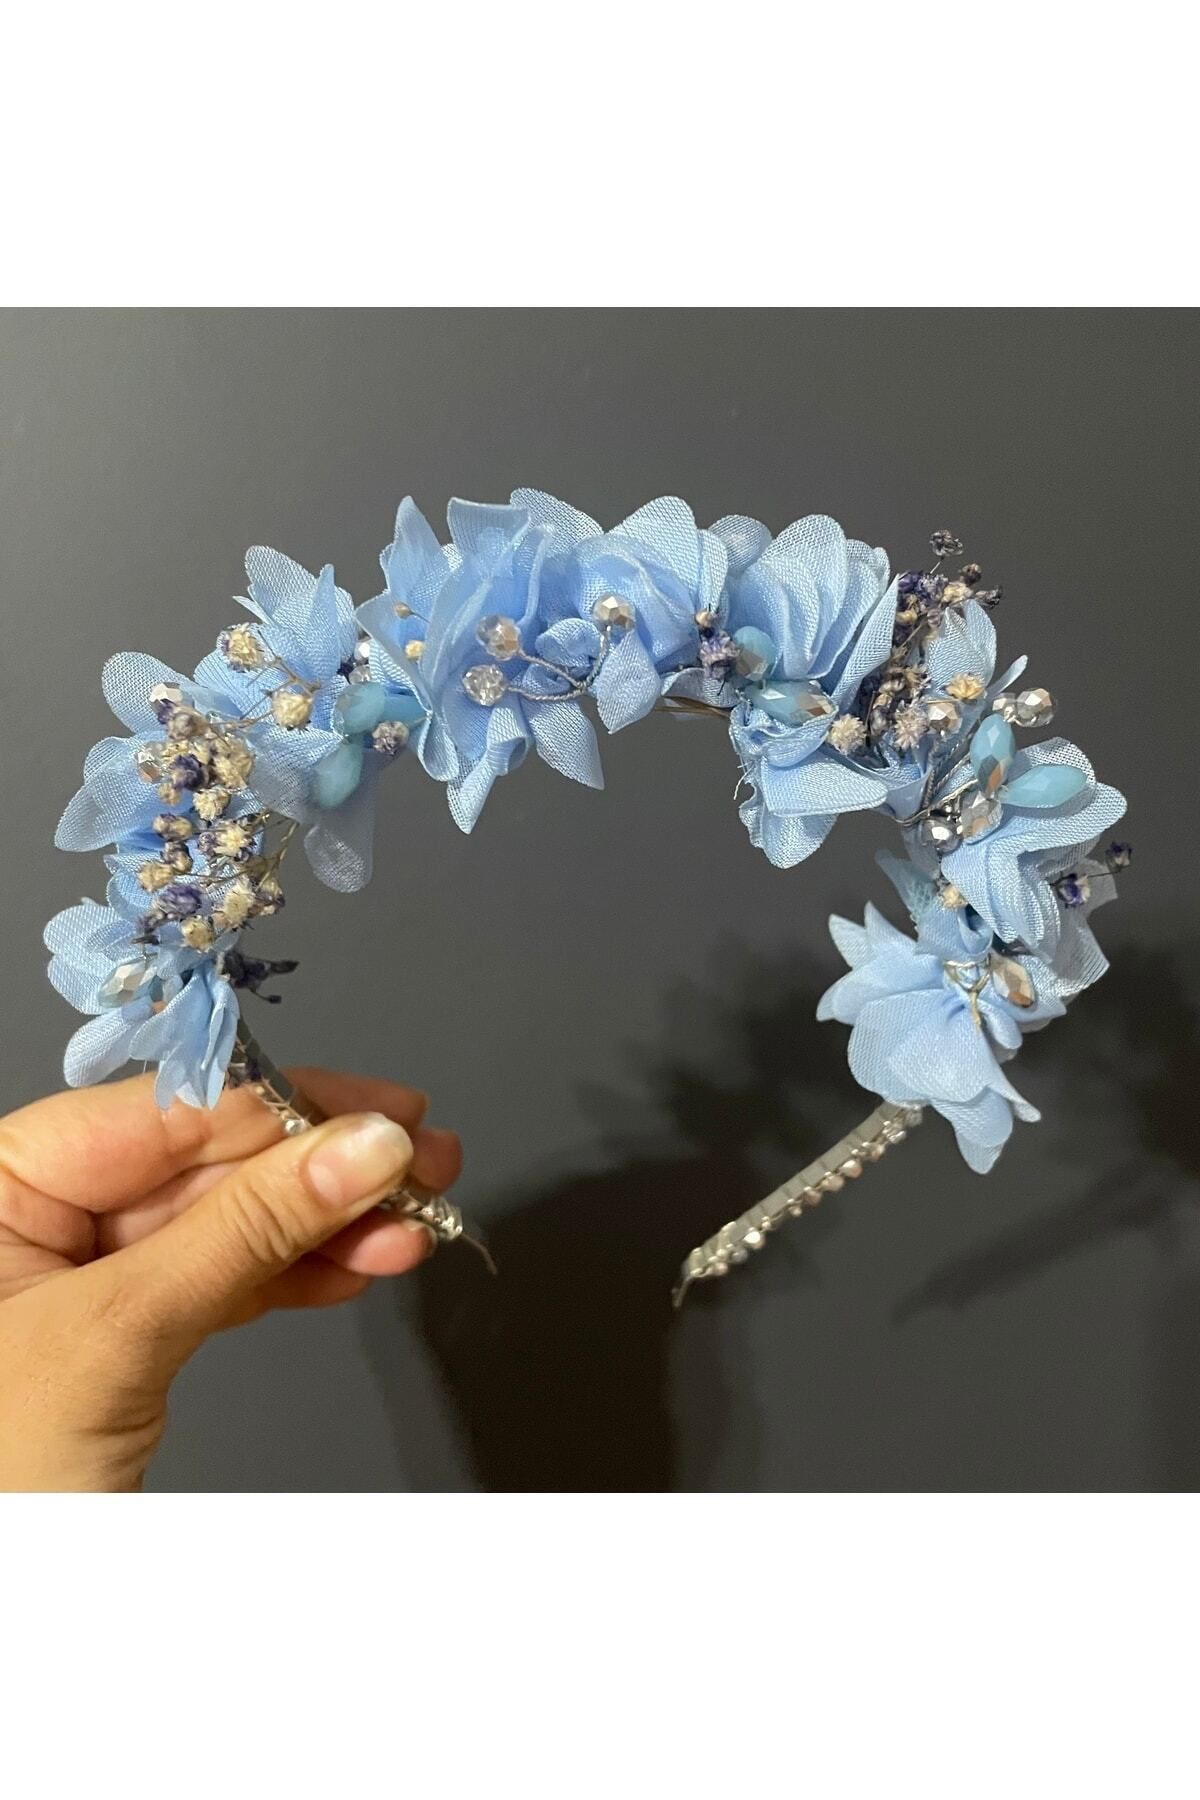 DesaAccessories Çiçek Detay Mavi Kristal Taş Işlemeli Lohusa, Nişan, Kır Düğünü Tacı